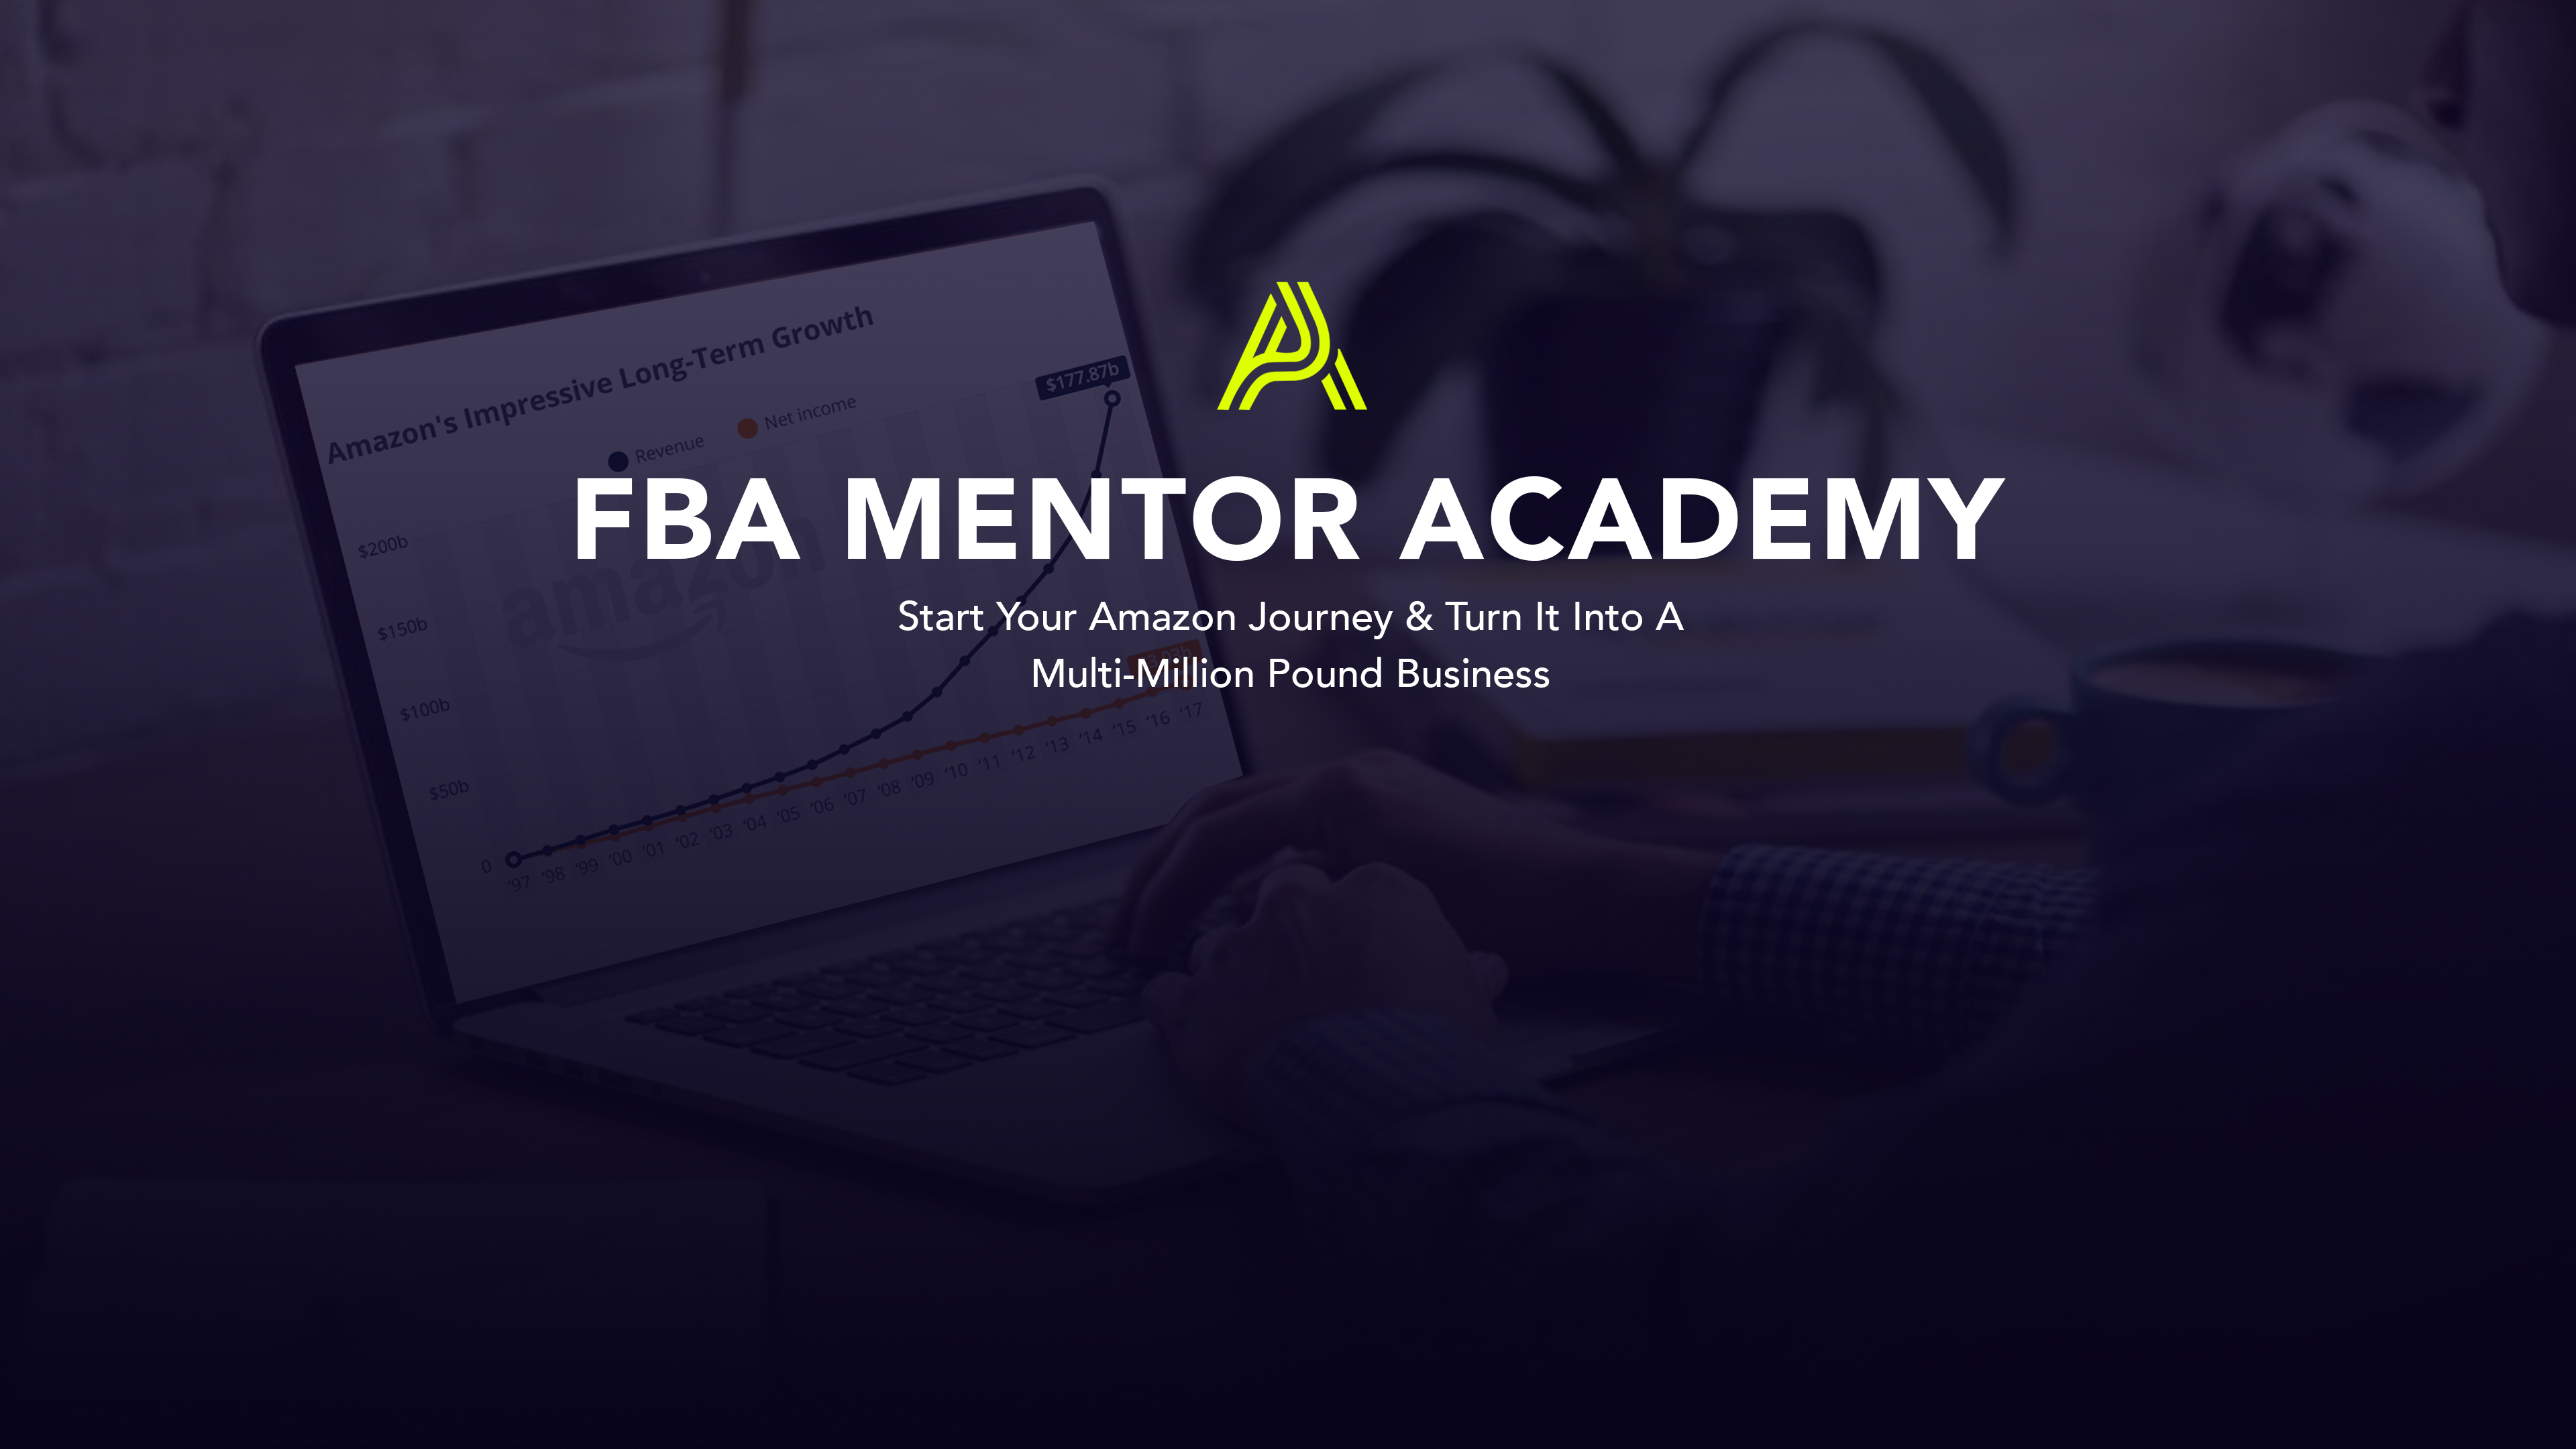 FBA Mentor Academy Online Course Amazon FBA Online Course Free FBA Course How To Start On Amazon Cheap Course